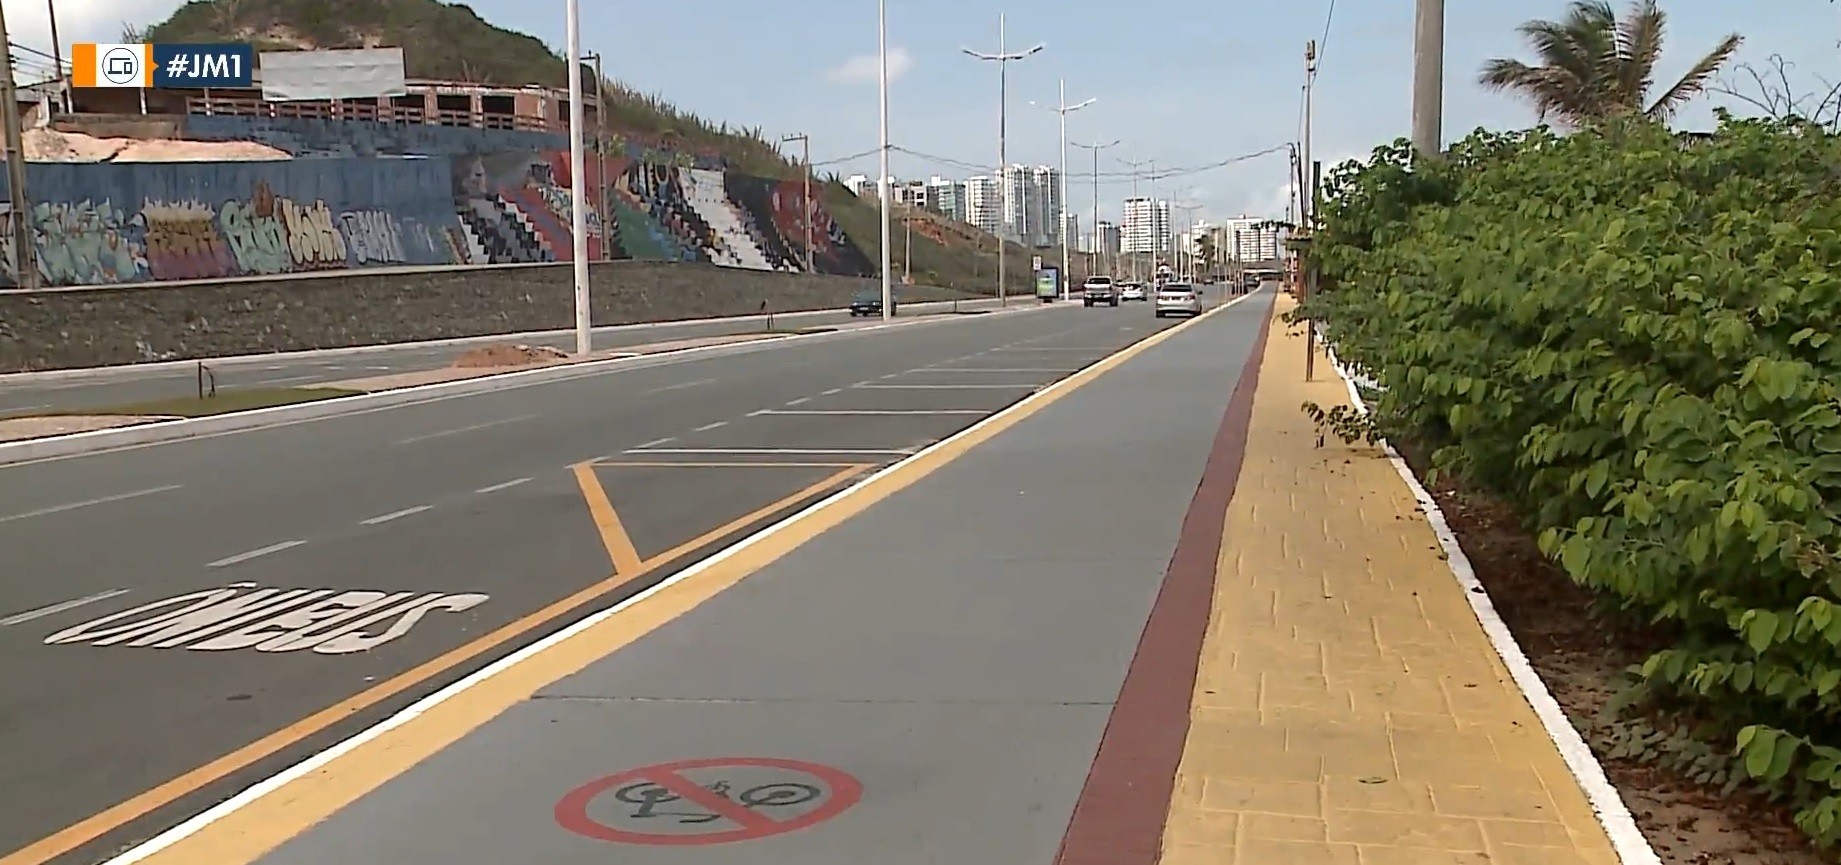 Ciclistas são proibidos de circular no calçadão da Avenida Litorânea em São Luís